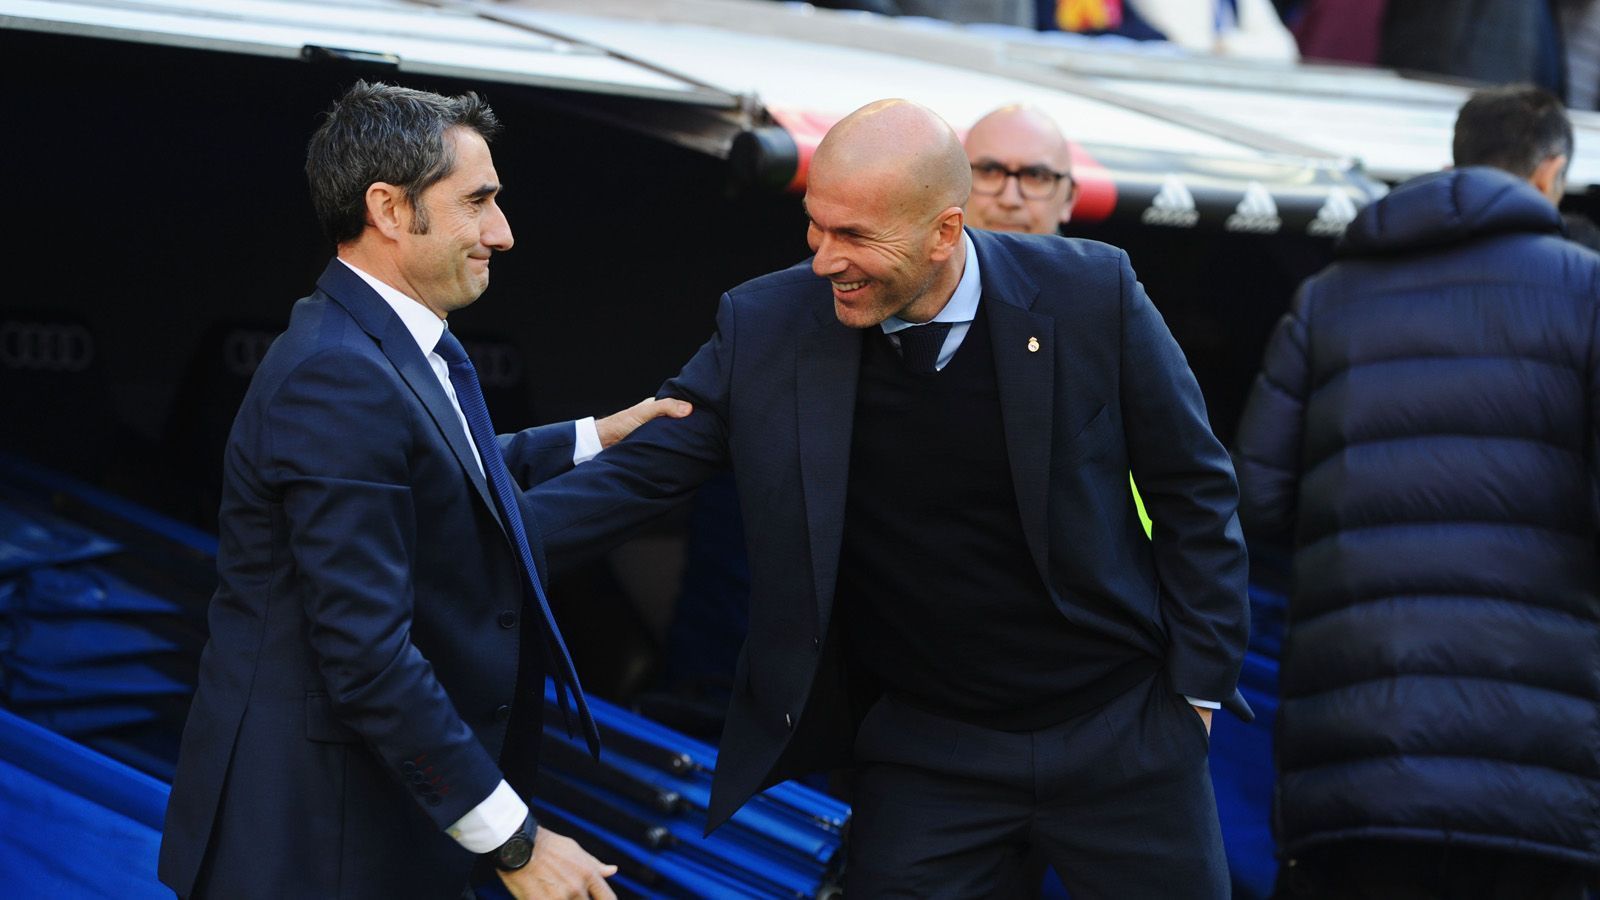 
                <strong>Ernesto Valverde vs. Zinedine Zidane</strong><br>
                Sitzen beim 179. El Clasico in der spanischen Primera Division auf der Trainerbank. Ernesto Valverde, Trainer des FC Barcelona (l.) und sein Pendant bei Real Madrid, Zinedine Zidane. Valverde ist seit Sommer 2017 bei den Katalanen, in dieser Zeit kam es sechs Mal zu einem El Clasico, von denen die Katalanen vier gewinnen konnten und zwei Mal kam es zu einem Remis. Aber auch Zidane verfügt sowohl als Spieler, als auch als Coach über sehr viel Clasico-Erfahrung und weiß, wie er sein Team richtig motivieren kann, daher teilen sich die Trainer hier die Punkte. Stand: 5,5 zu 6,5.
              